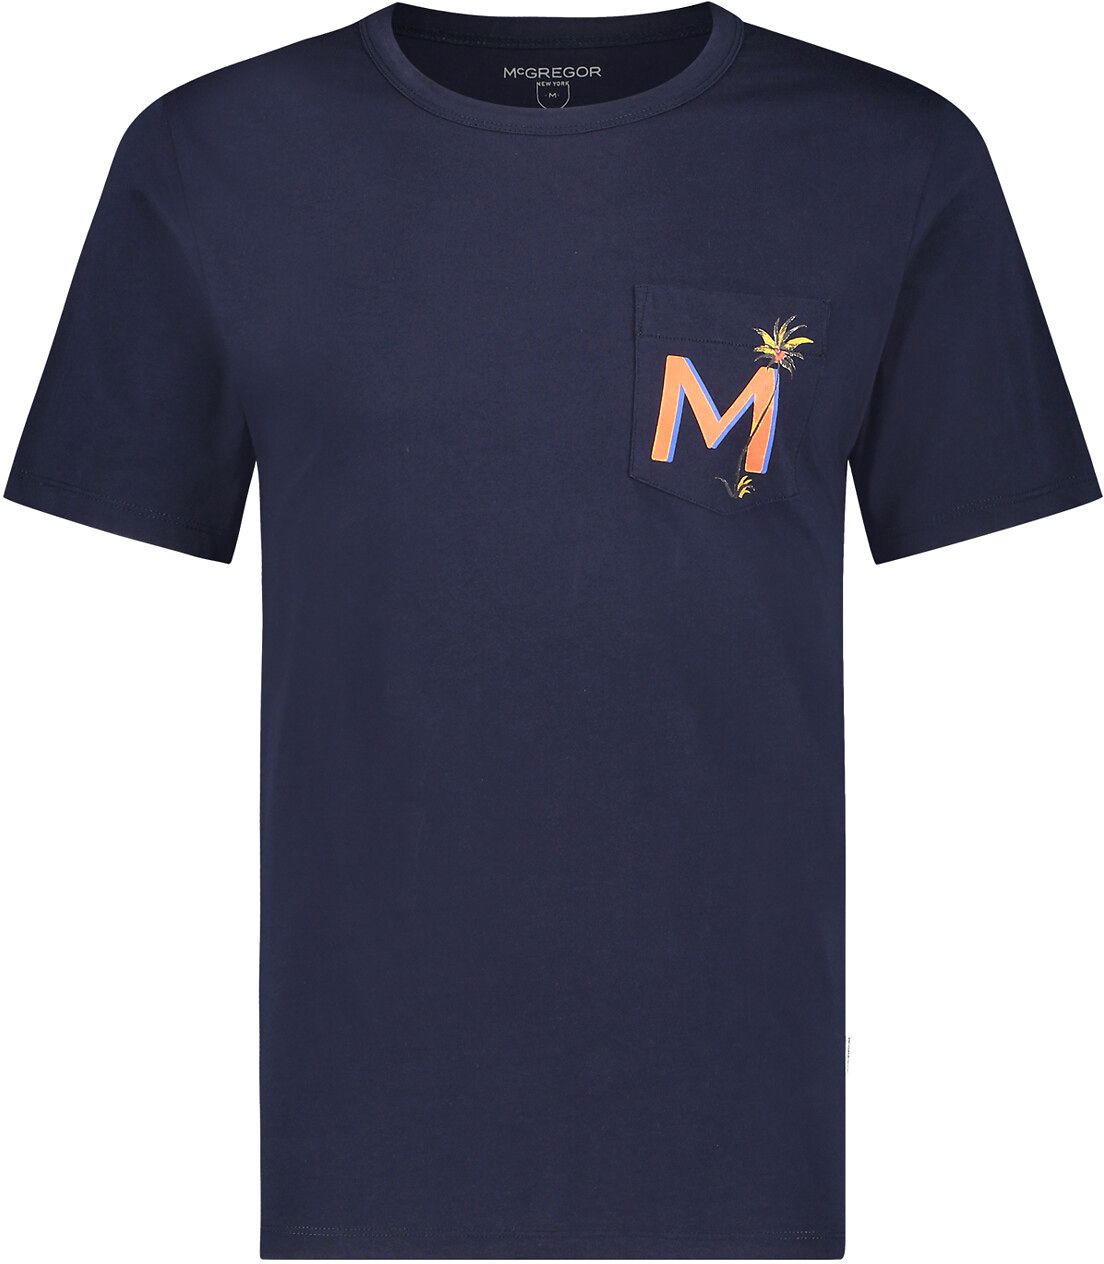 McGregor T Shirt Pocket Logo Navy Blue Dark Blue size S